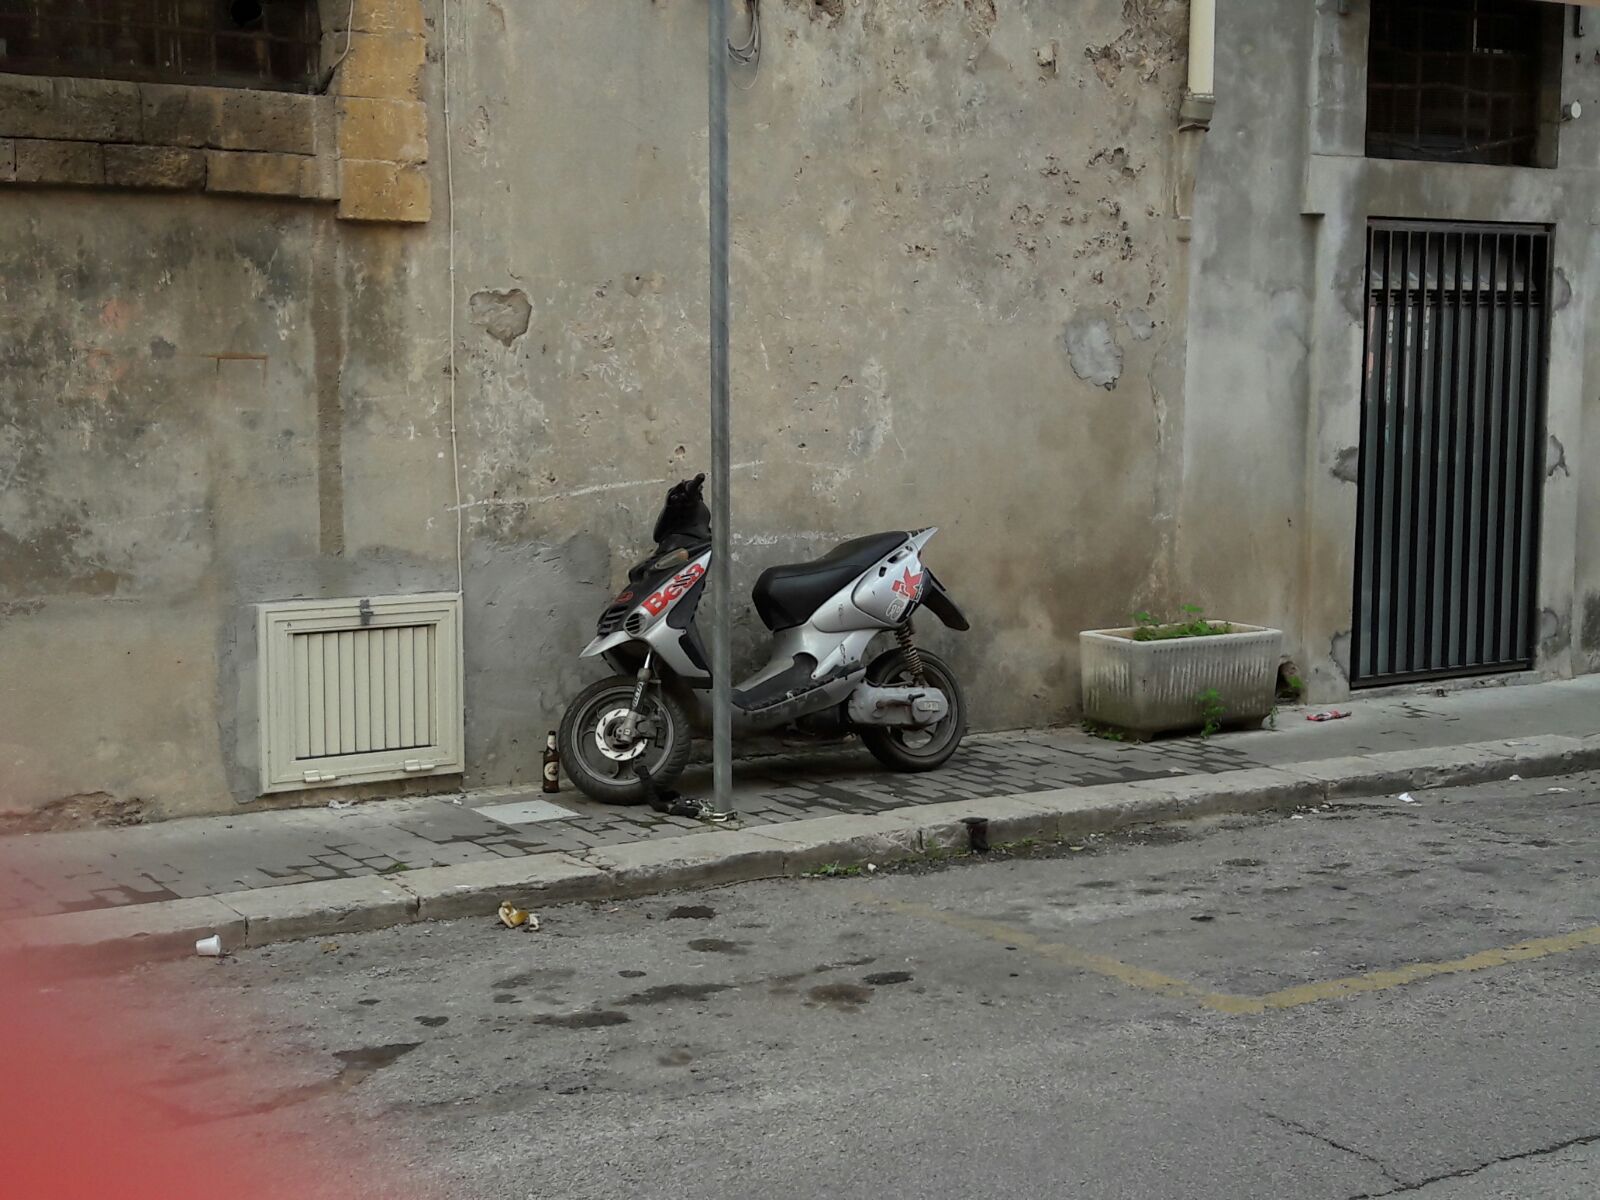  Sorpresa in via Giovanni Meli: uno scooter abbandonato sul marciapiede!